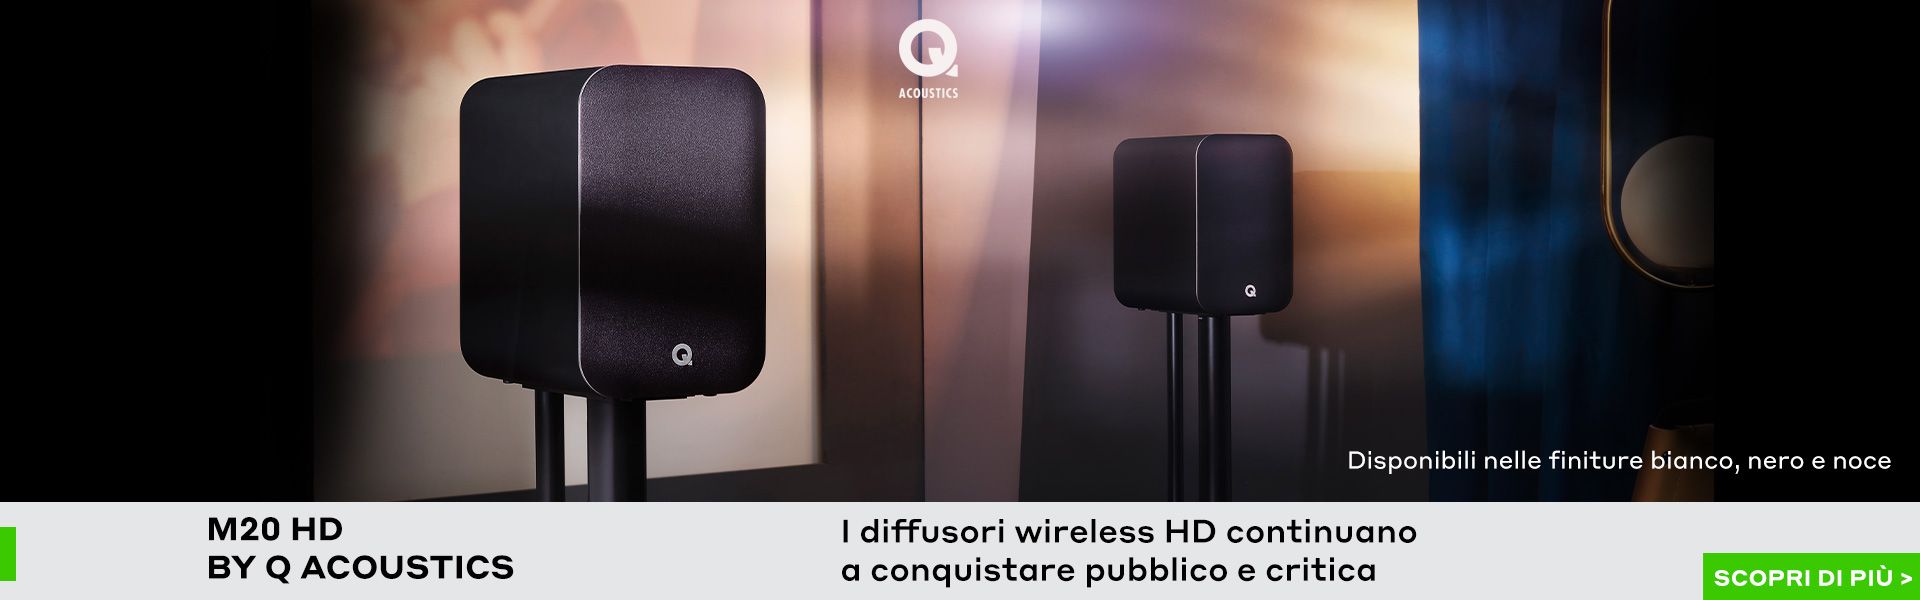 Diffusori wireless HD M20HD Q Acoustics